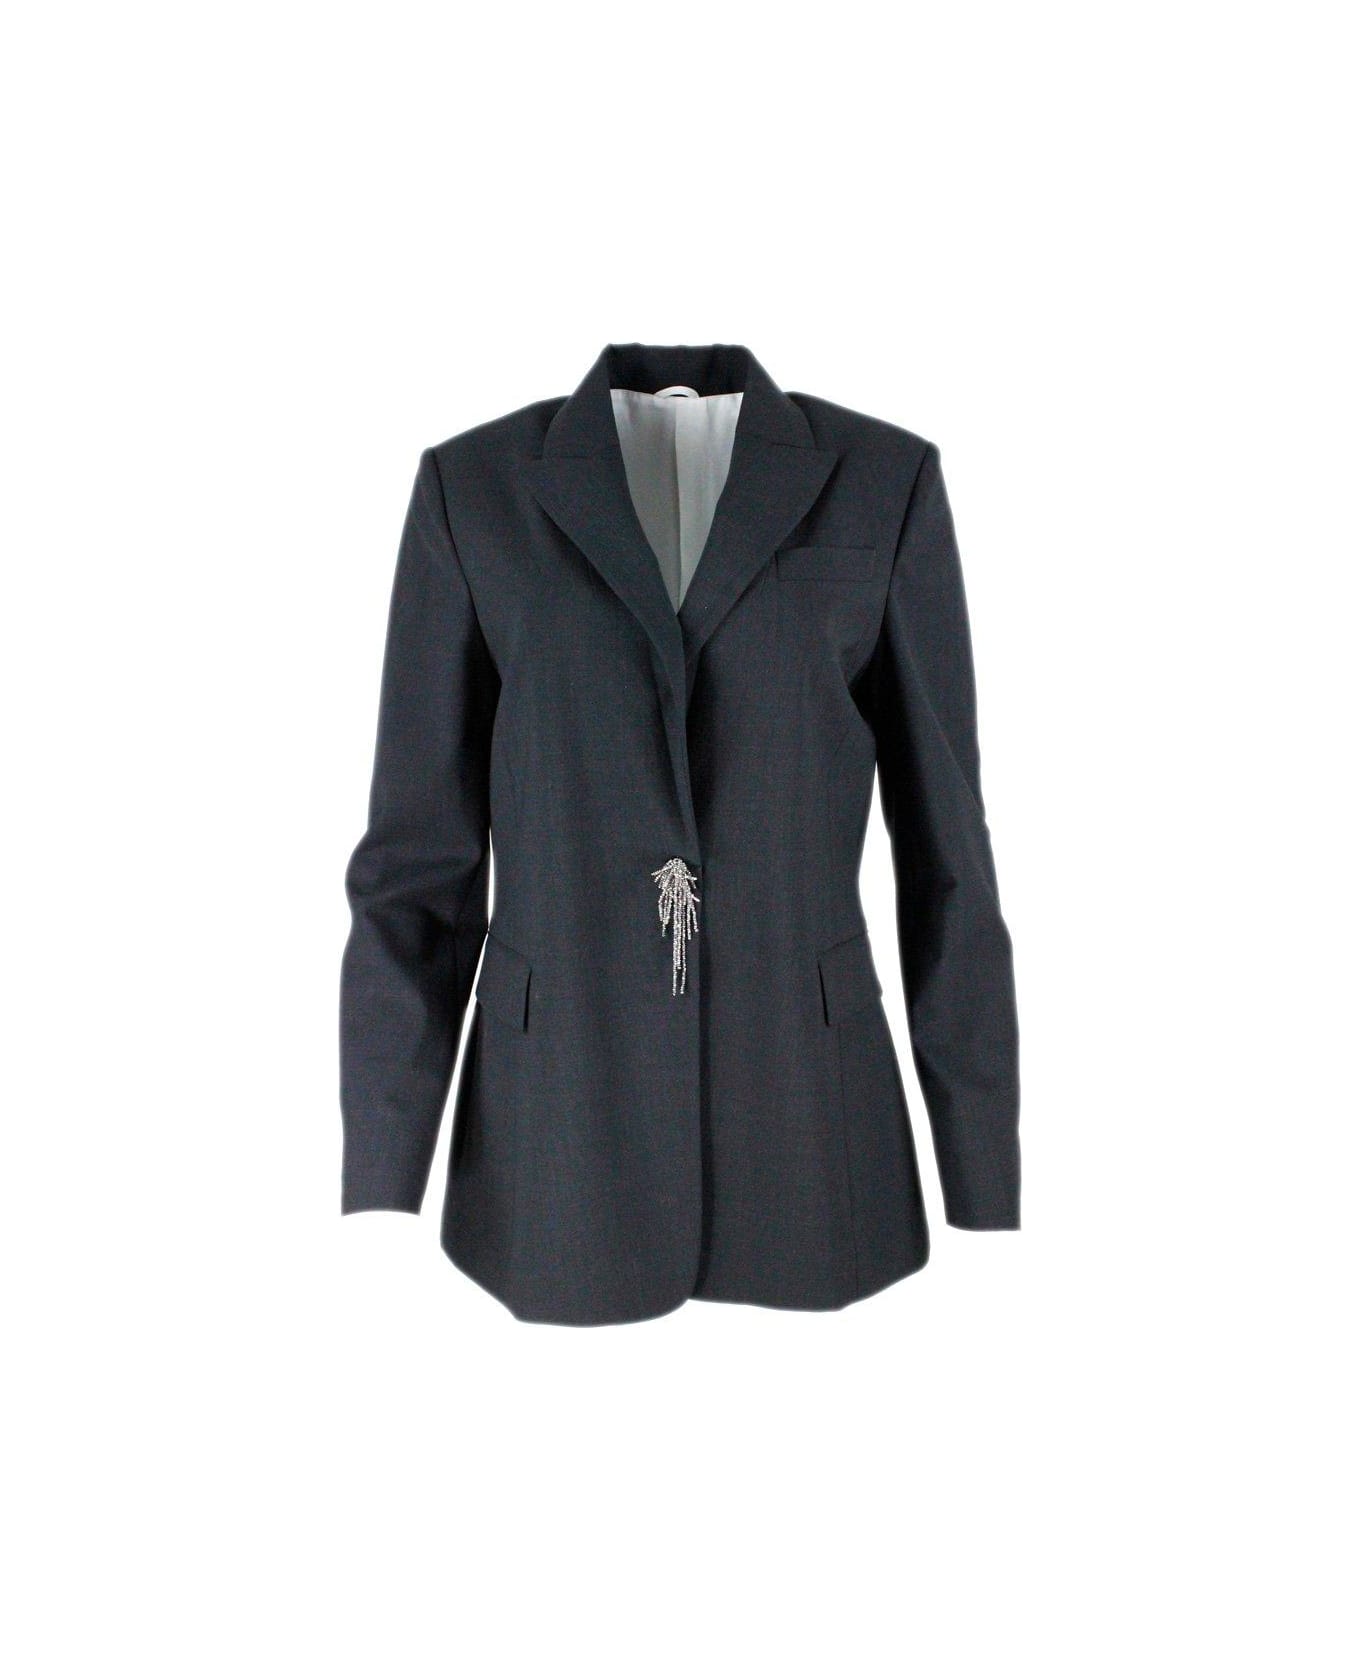 Brunello Cucinelli Pin Embellished Tailored Blazer - Grey Dark ブレザー